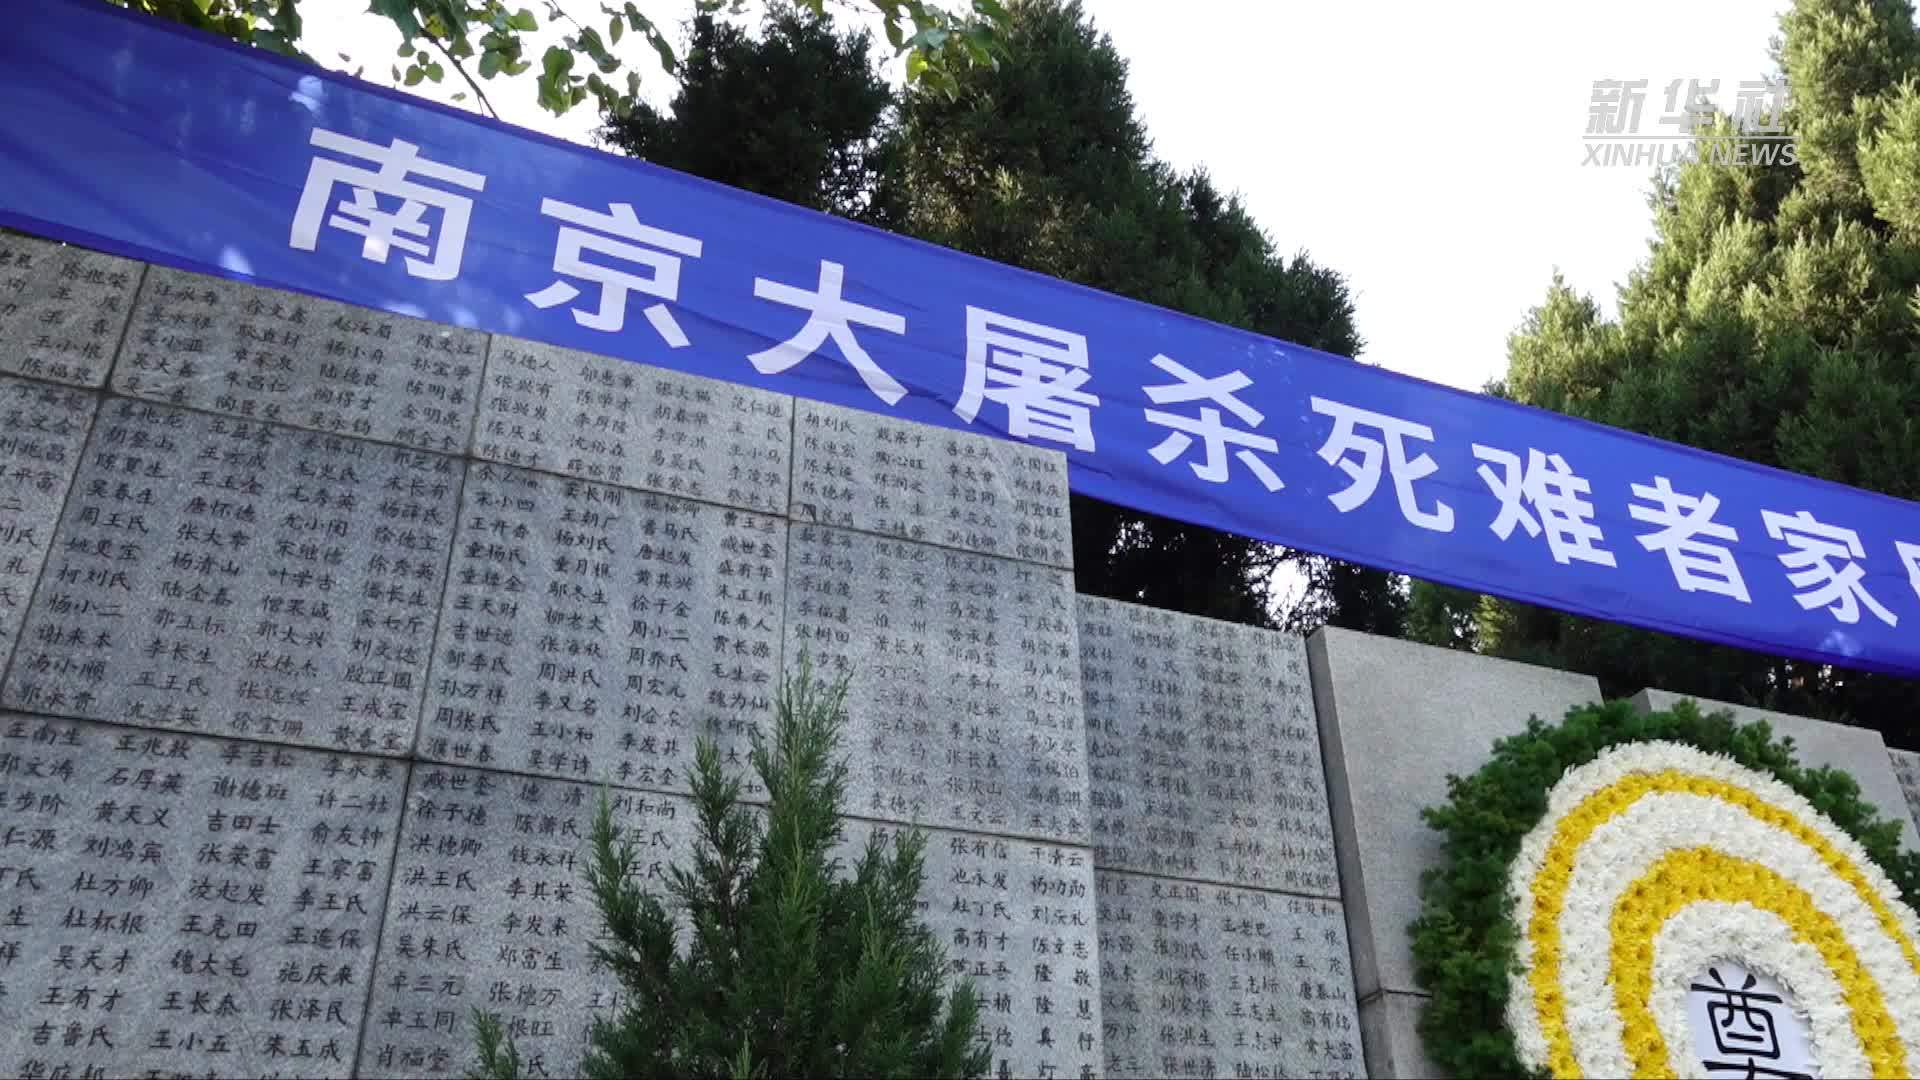 南京大屠杀死难者家祭活动启动 在世幸存者仅剩38人